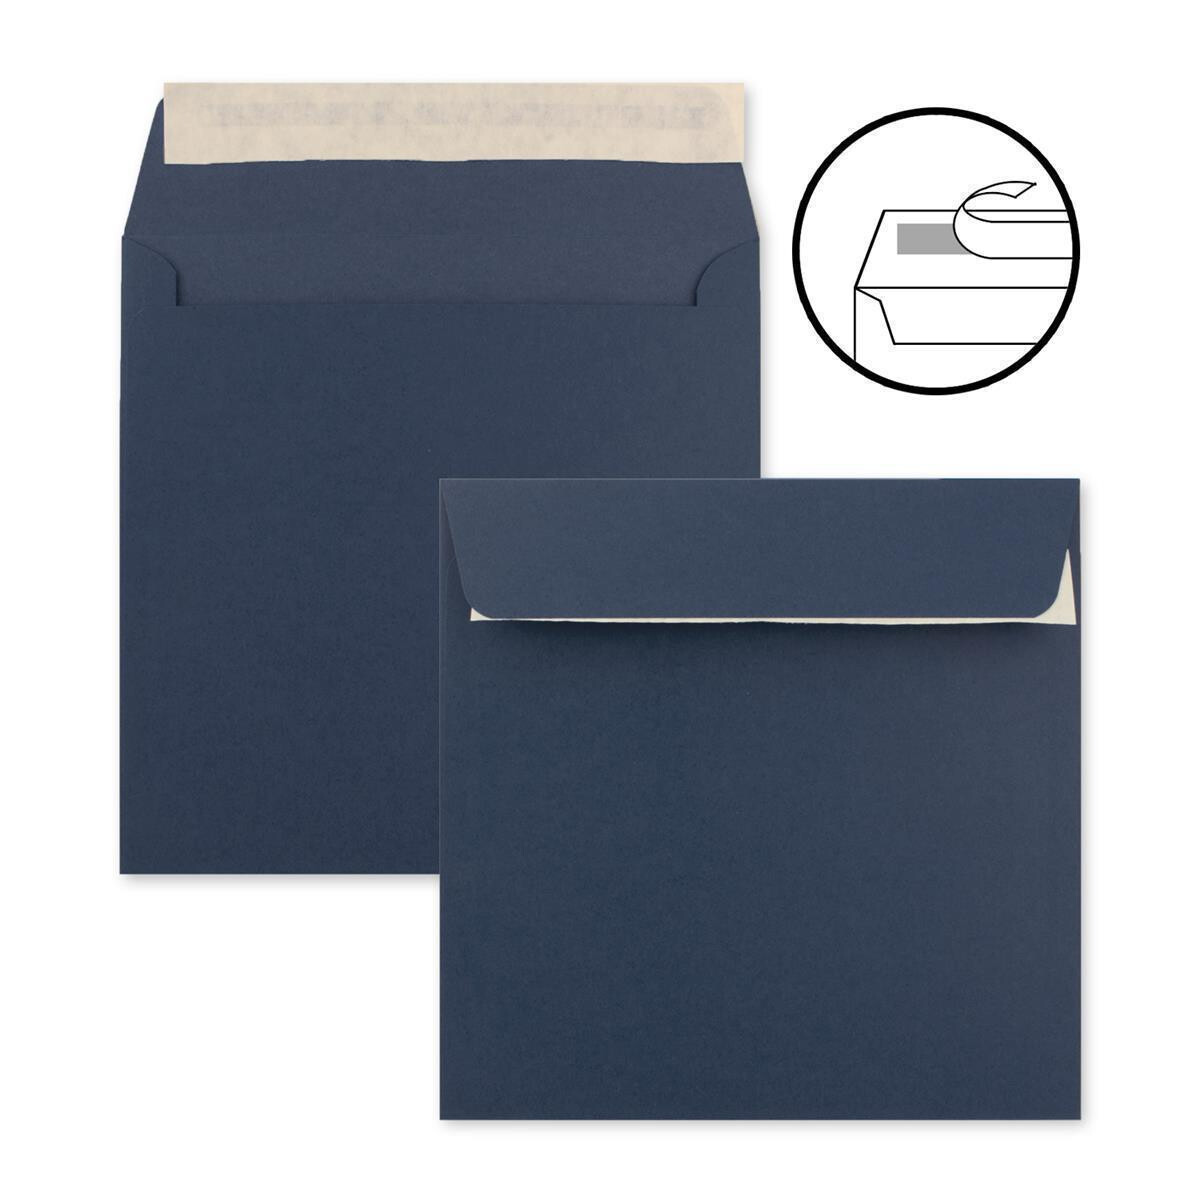 Quadrat Briefumschlag Kuvert Briefkuvert Umschlag Briefumschläge Blau 